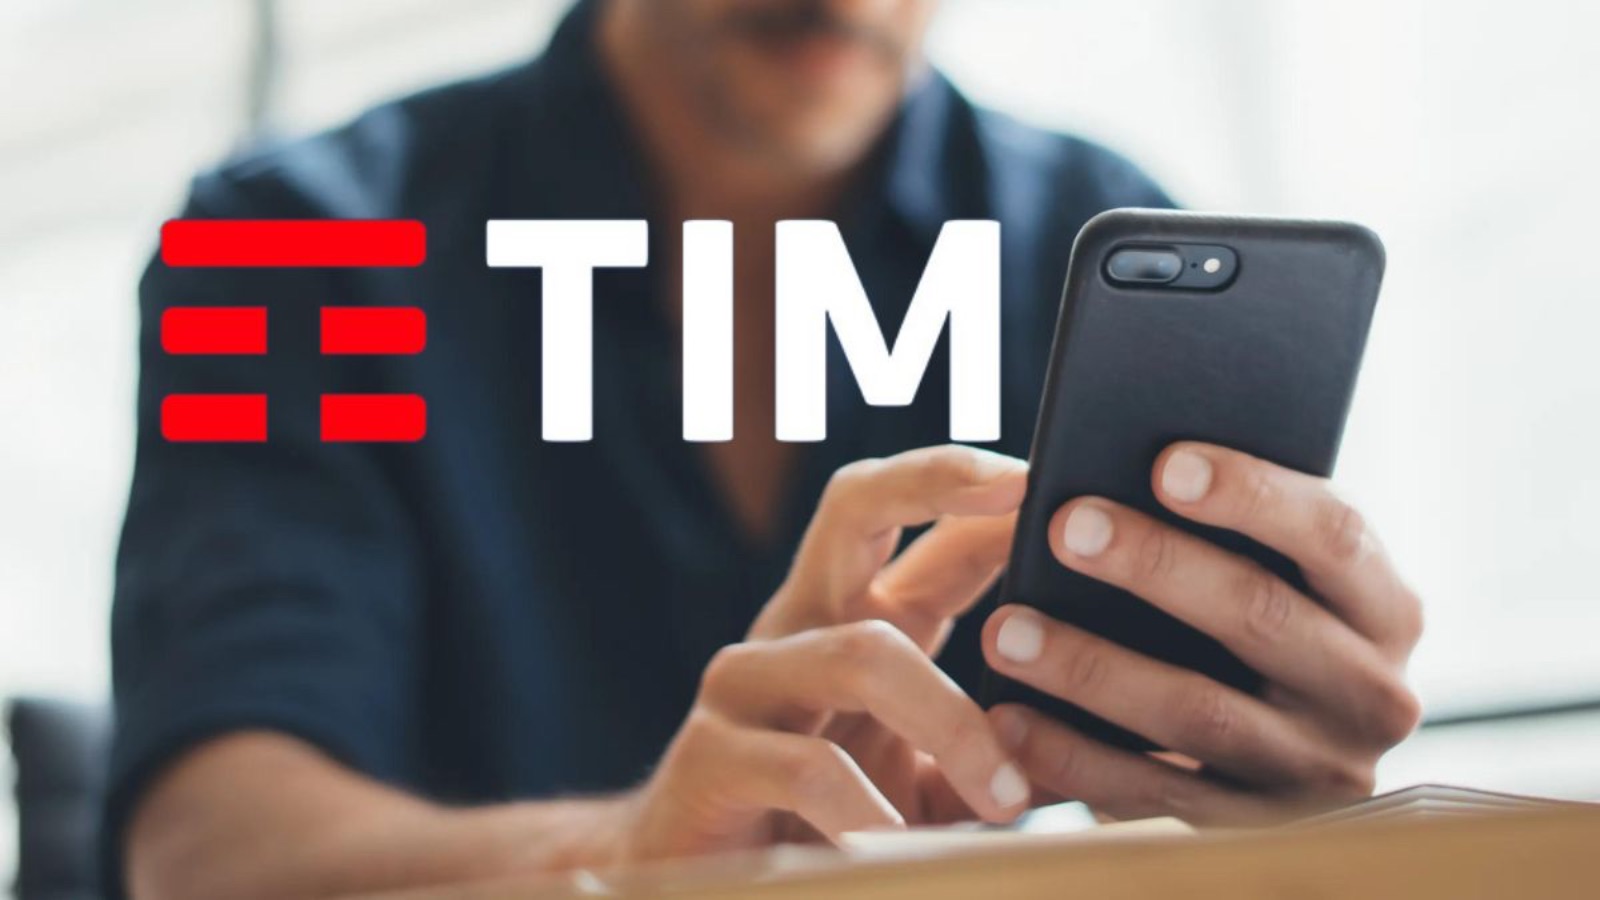 TIM ha in pugno Vodafone con le Power da 6 EURO al mese